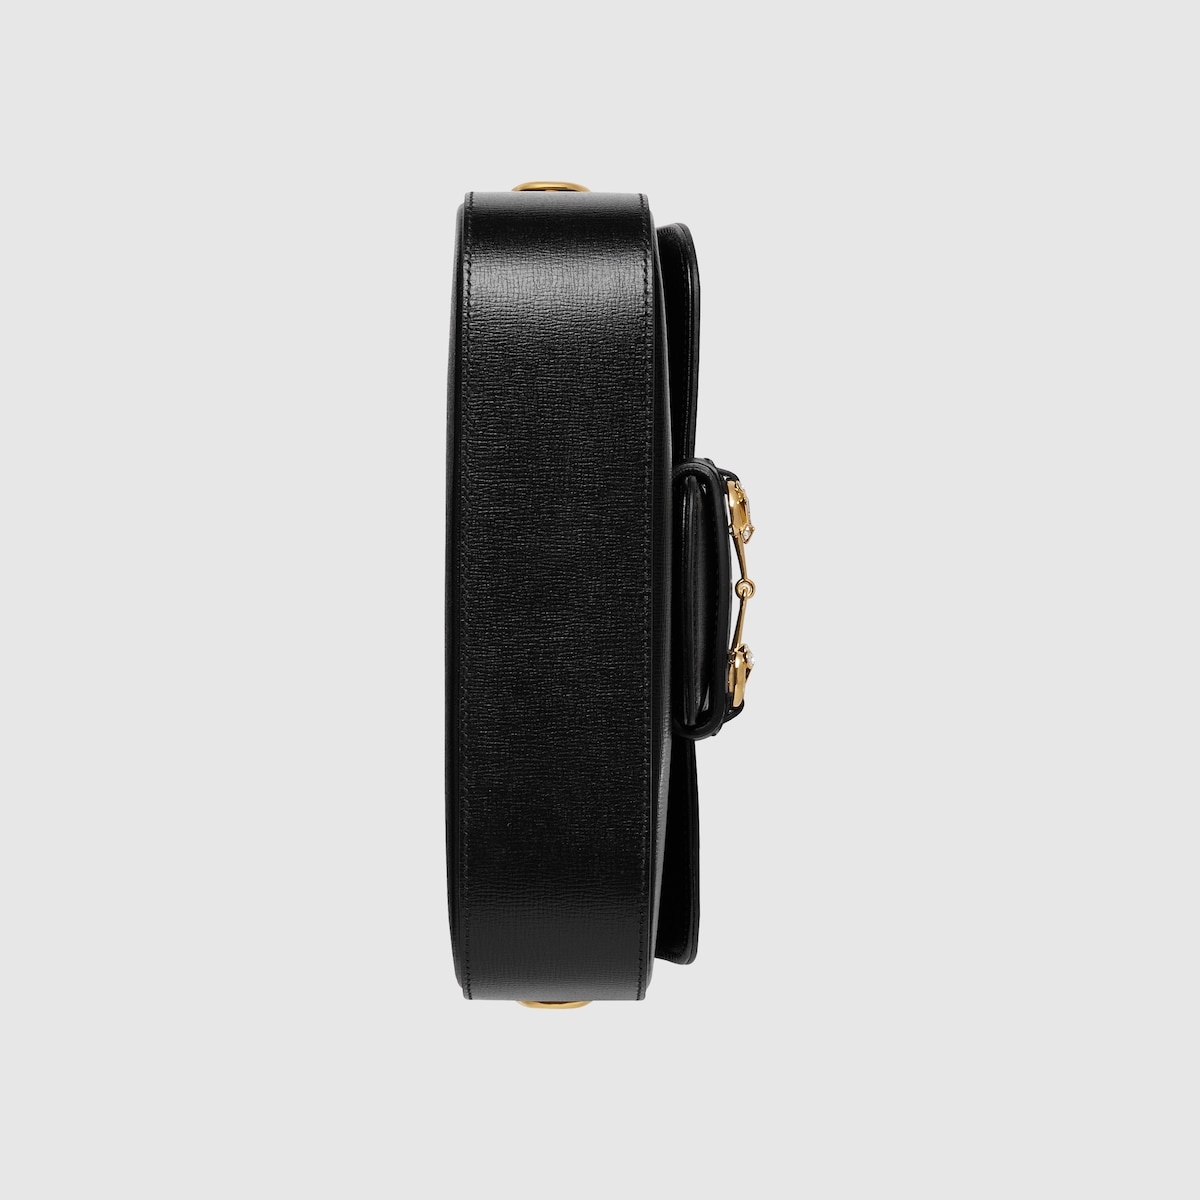 Gucci Horsebit 1955 small shoulder bag - 10